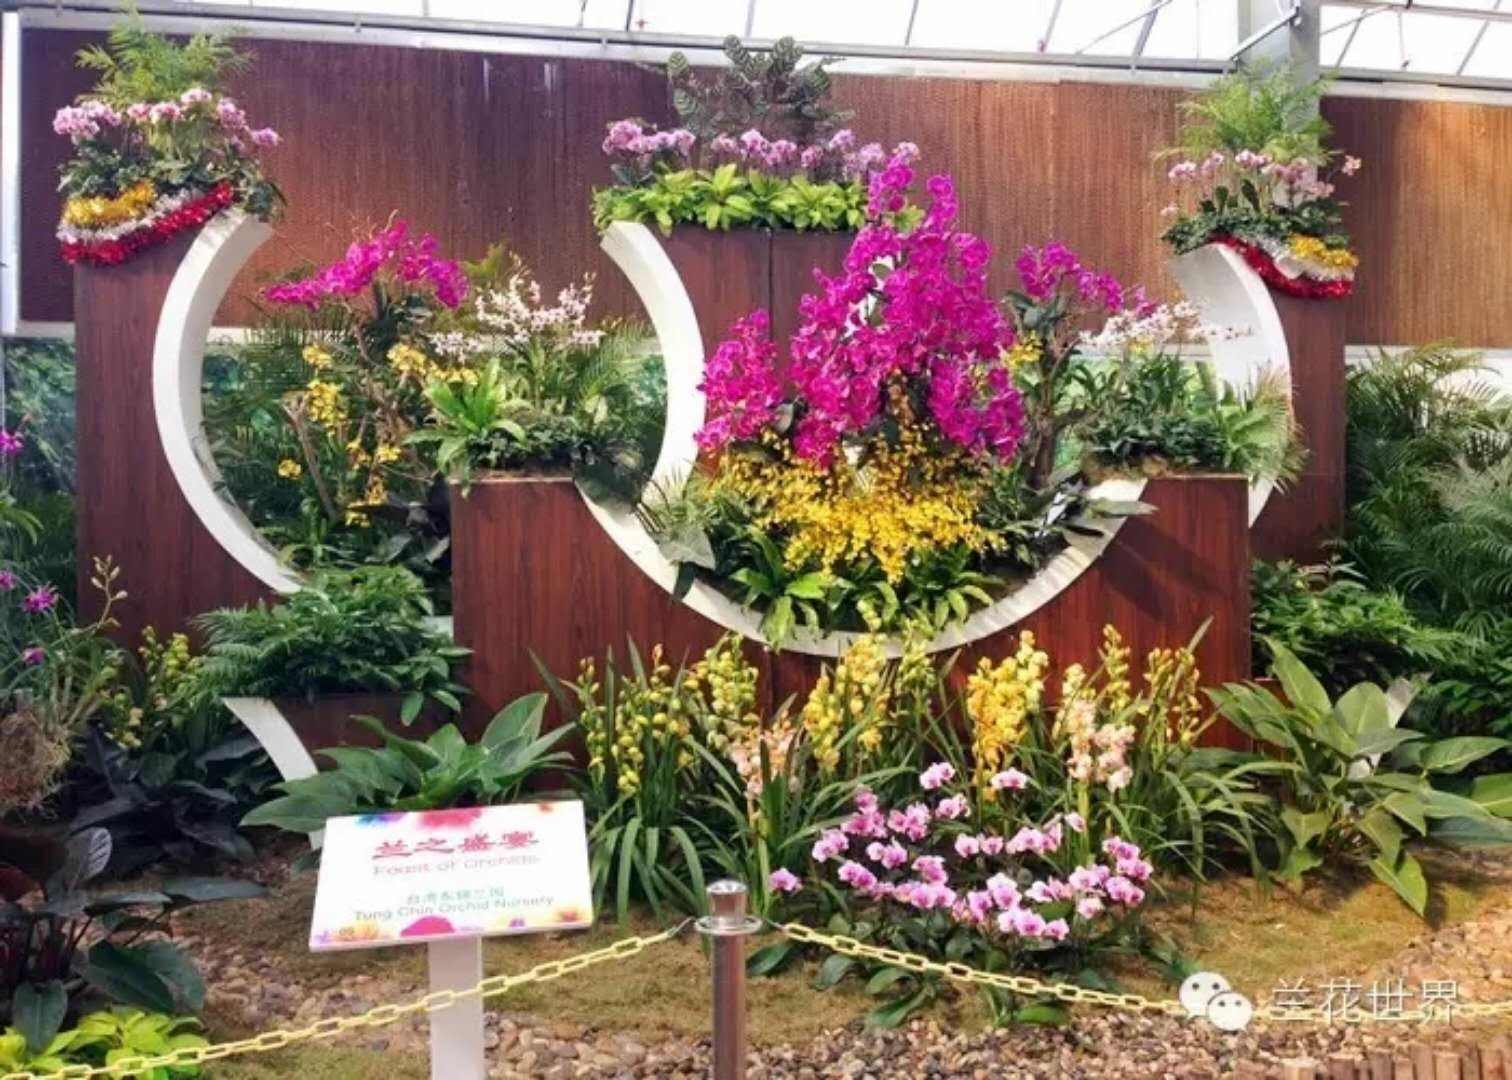 来自台湾的展商营造的兰花景观获奖作品goh pi khuan(三亚新闻网 记者